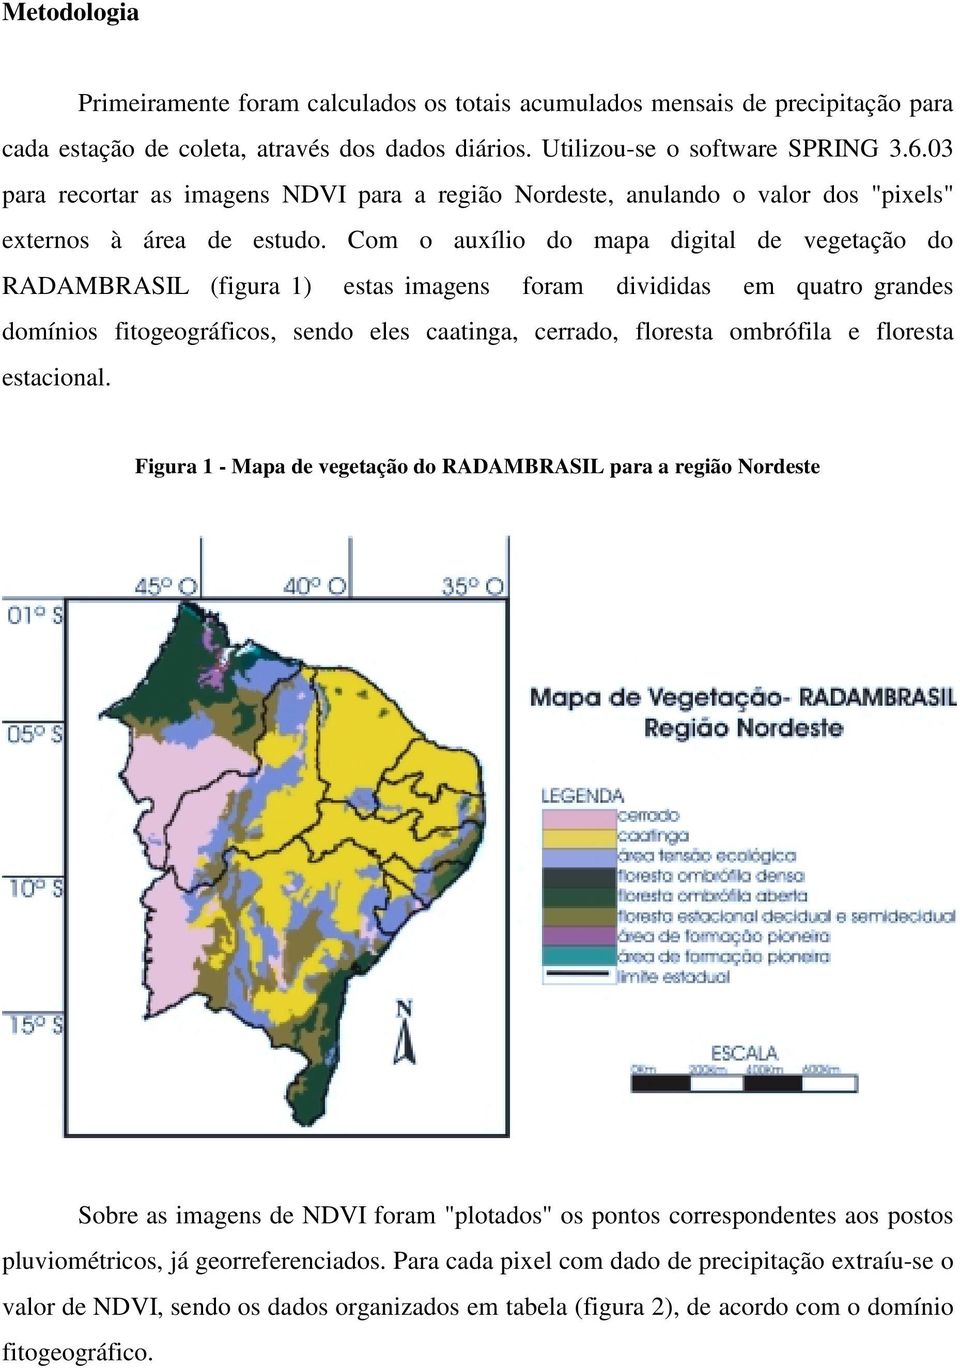 Com o auxílio do mapa digital de vegetação do RADAMBRASIL (figura 1) estas imagens foram divididas em quatro grandes domínios fitogeográficos, sendo eles caatinga, cerrado, floresta ombrófila e